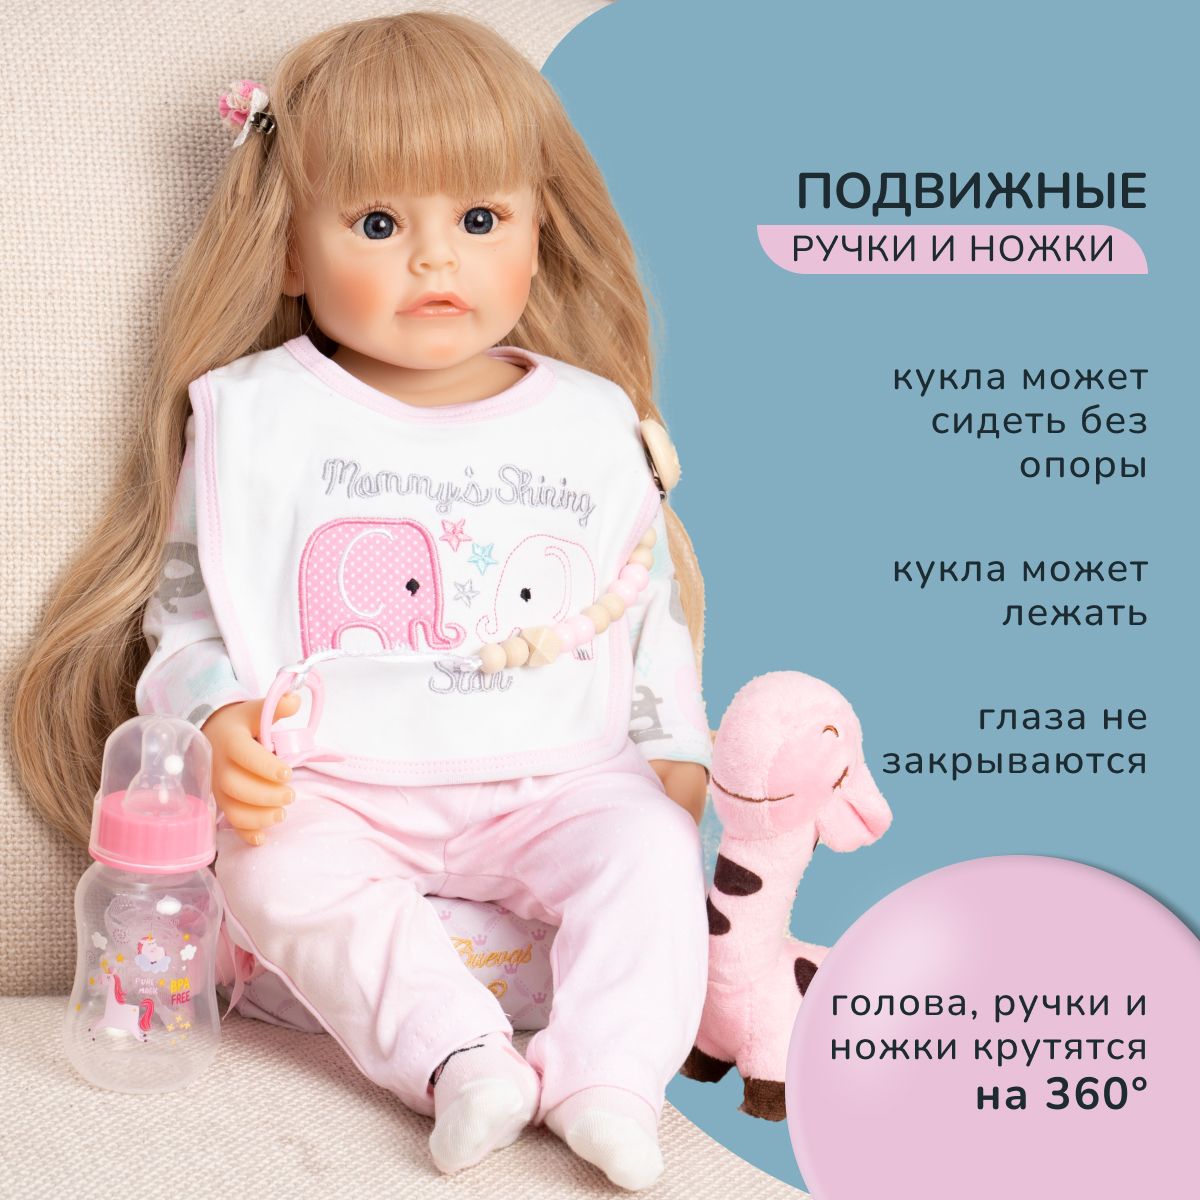 Кукла Реборн QA BABY Ева девочка большая пупс набор игрушки для девочки 55 см 5506 - фото 5